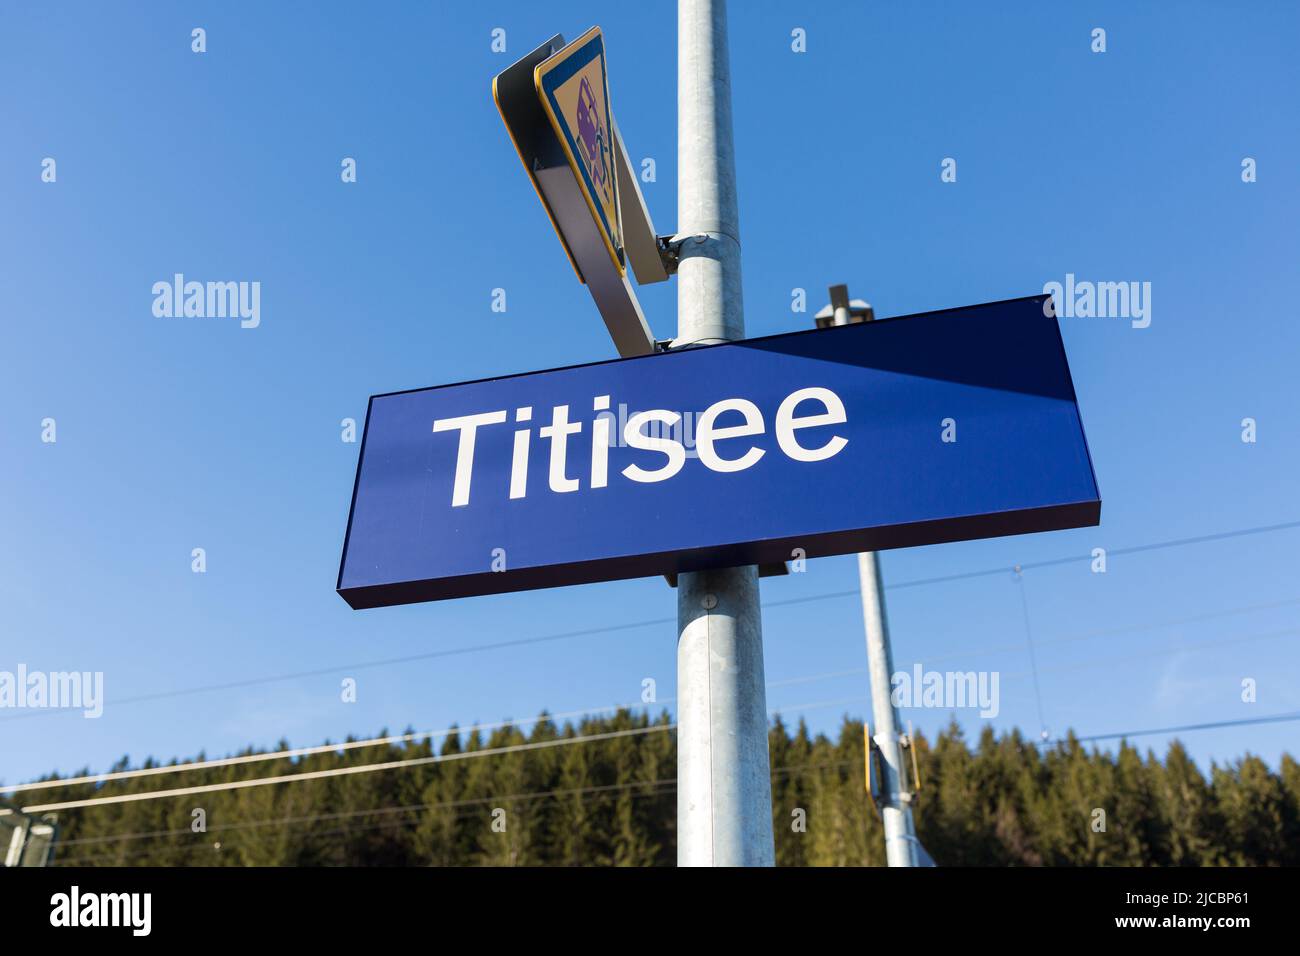 Titisee, Deutschland - 21. Nov 2021: Schild Titisee am Bahnhof Titisee. Berühmtes Ausflugsziel im Schwarzwald. Stockfoto